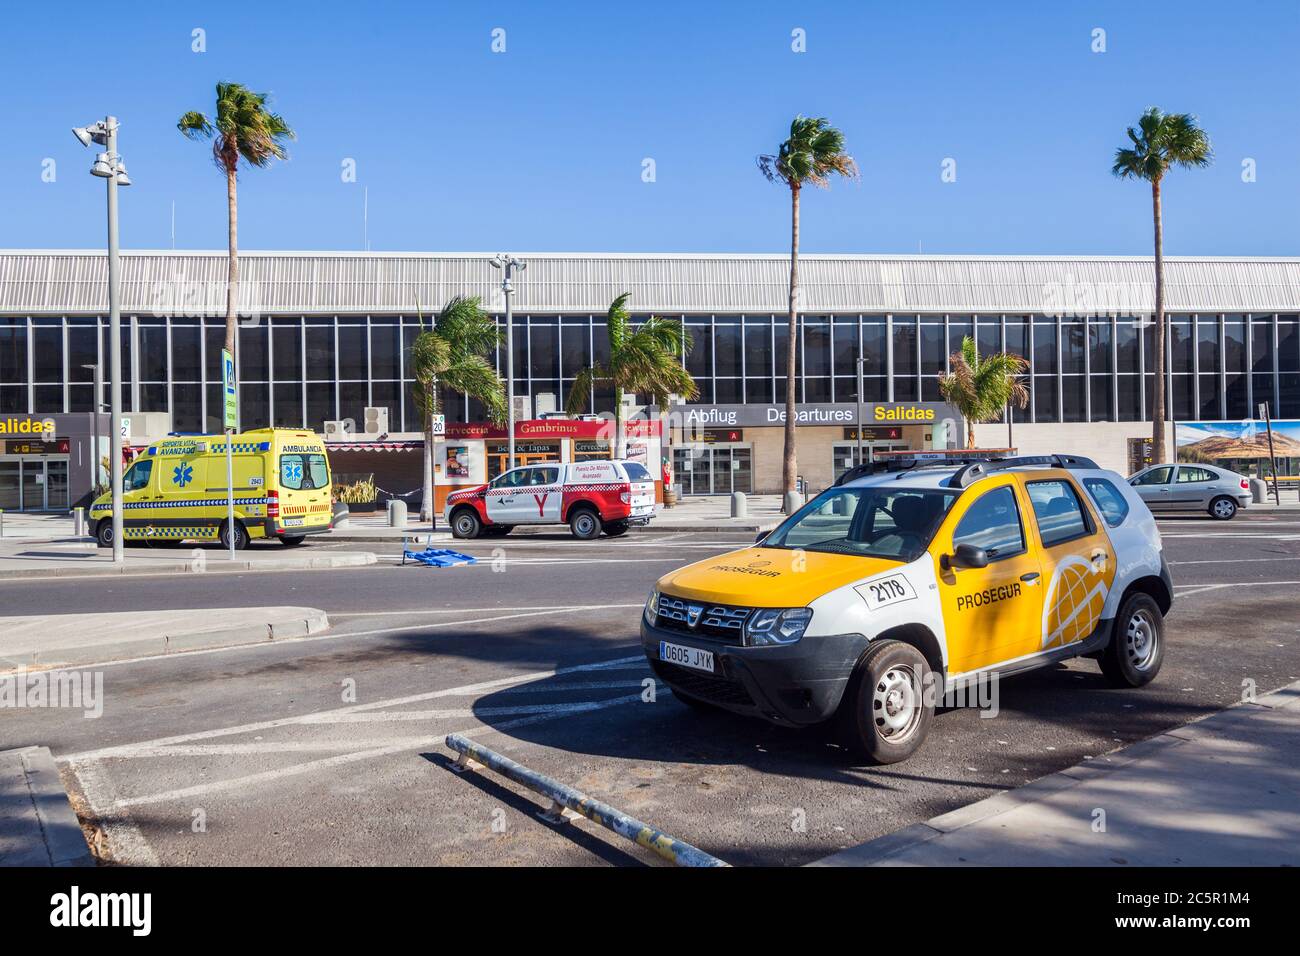 Aéroport de Tenerife Sud, terminal vide en raison des restrictions de voyage liées à l'épidémie de coronavirus Covid-19. Crise de l'industrie touristique en Espagne et aux îles Canaries Banque D'Images